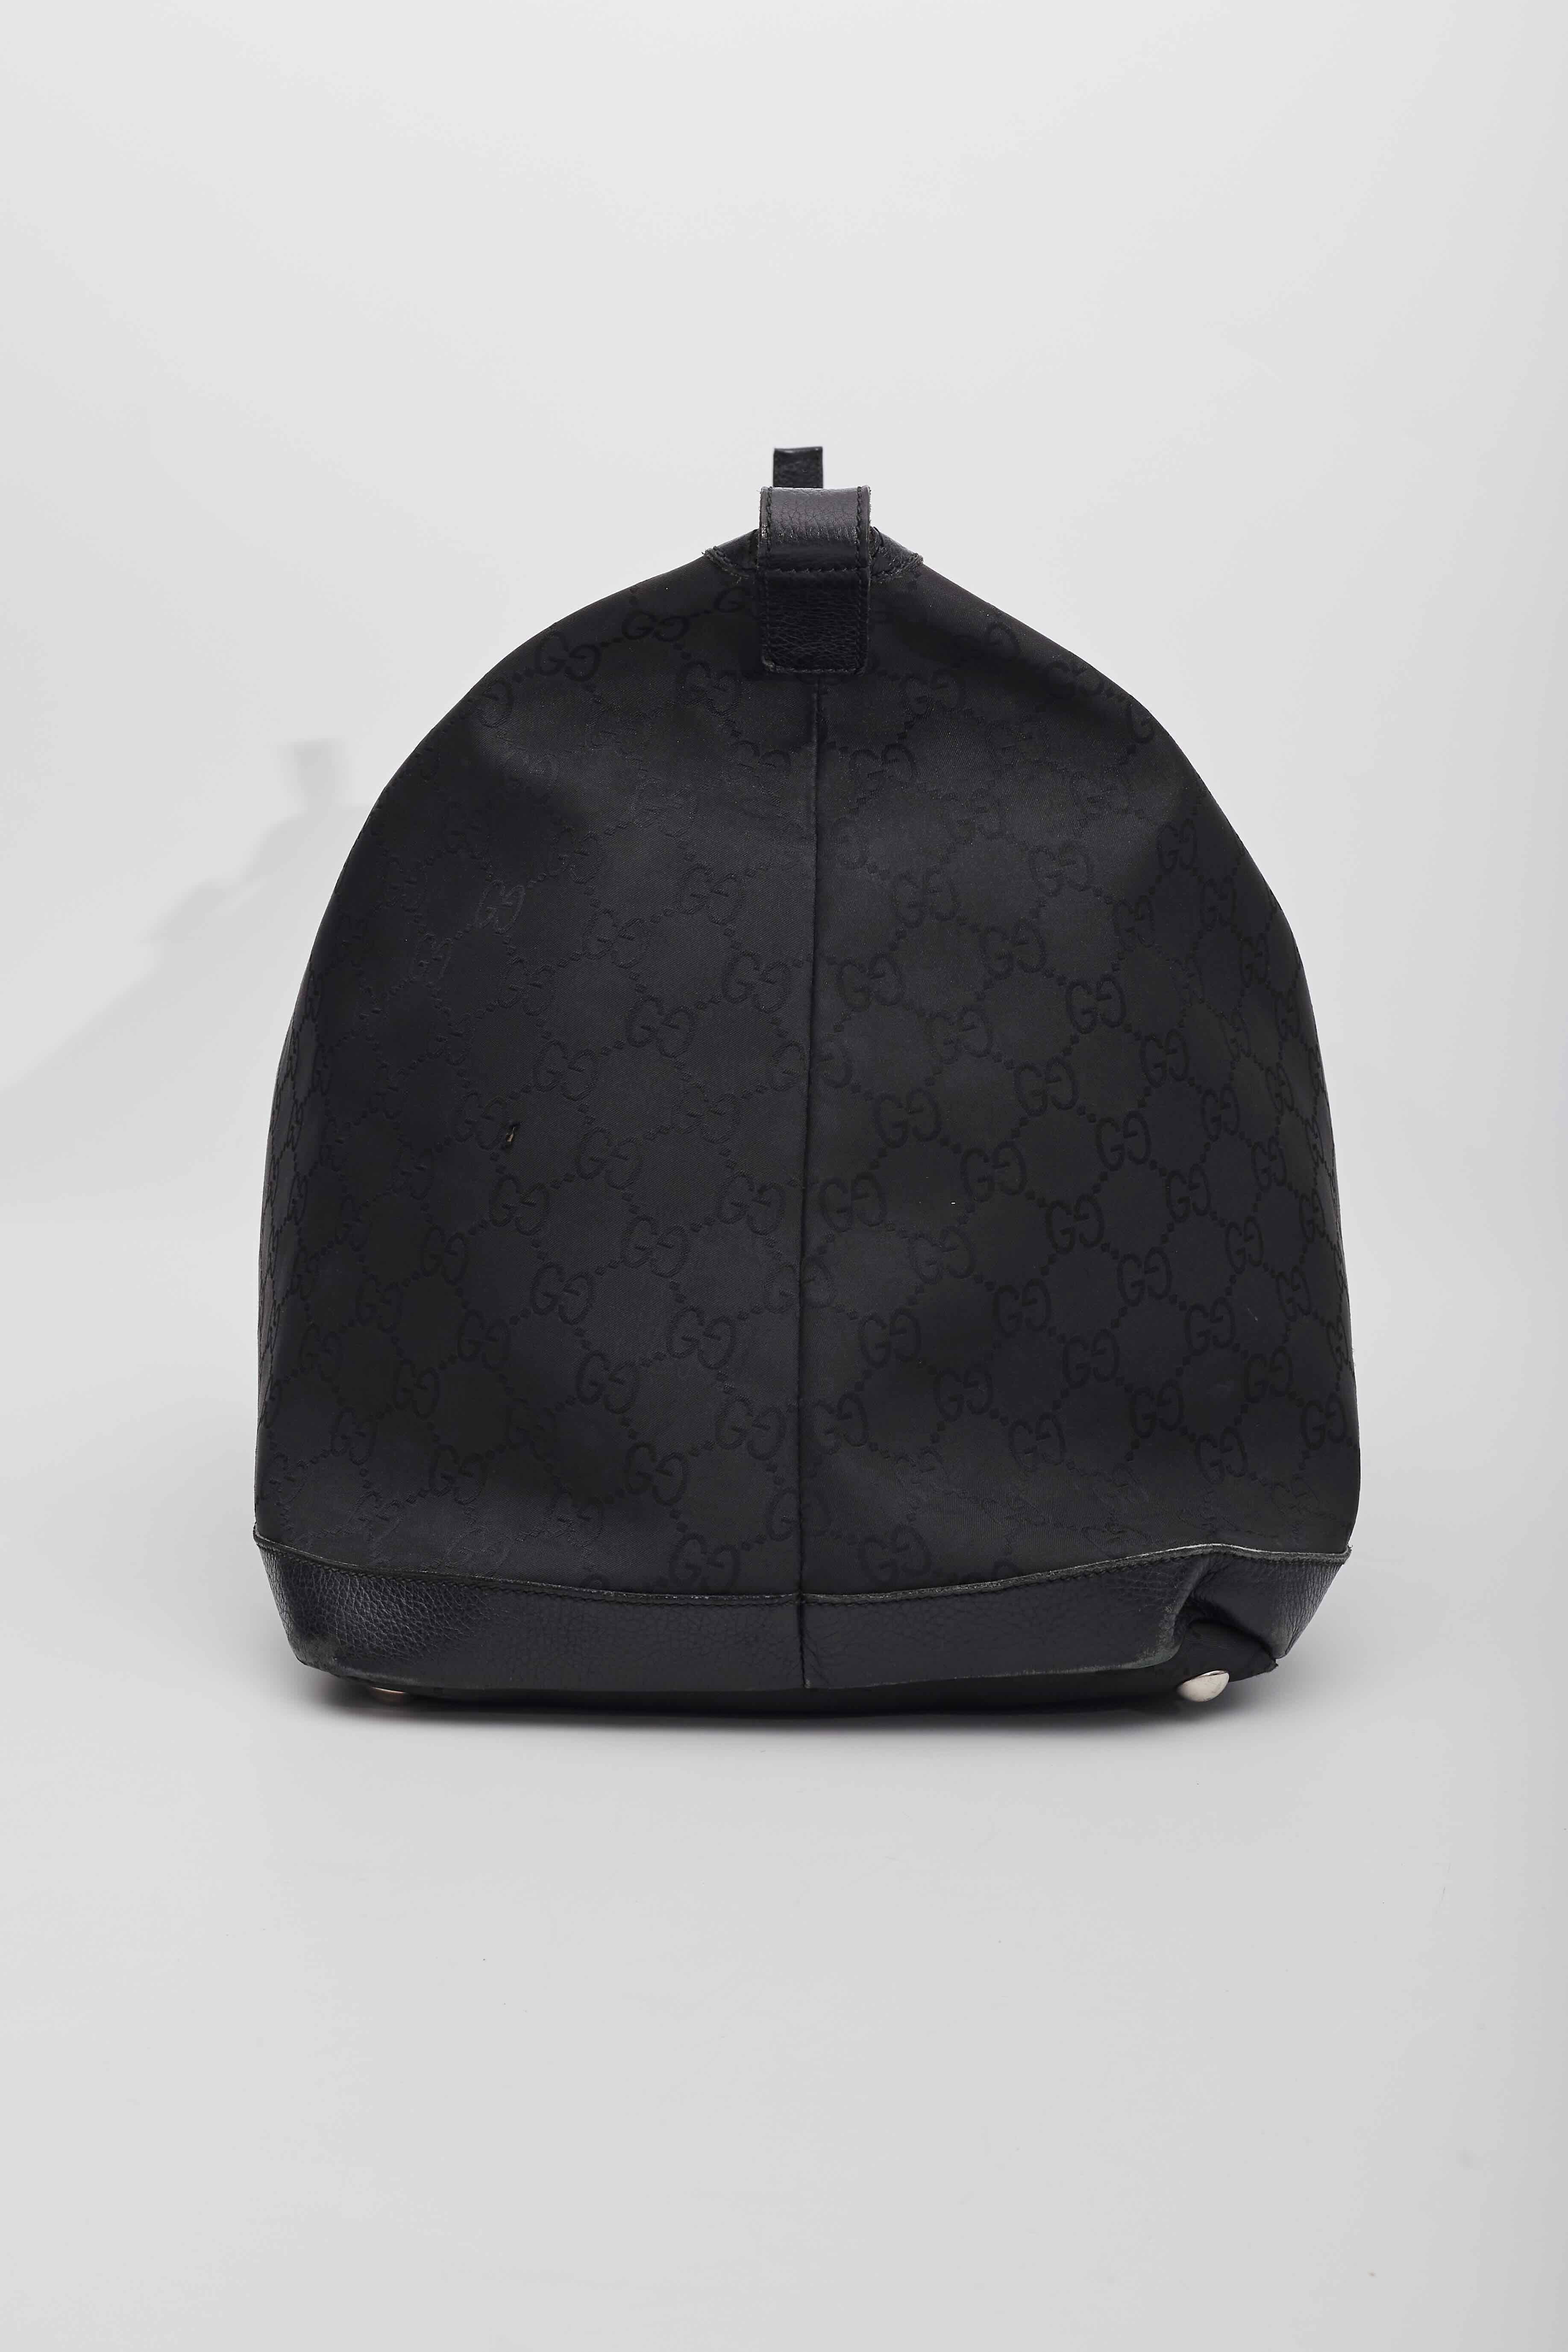 Women's Gucci Nylon Black Monogram Hobo 48hr Travel Bag Large  For Sale